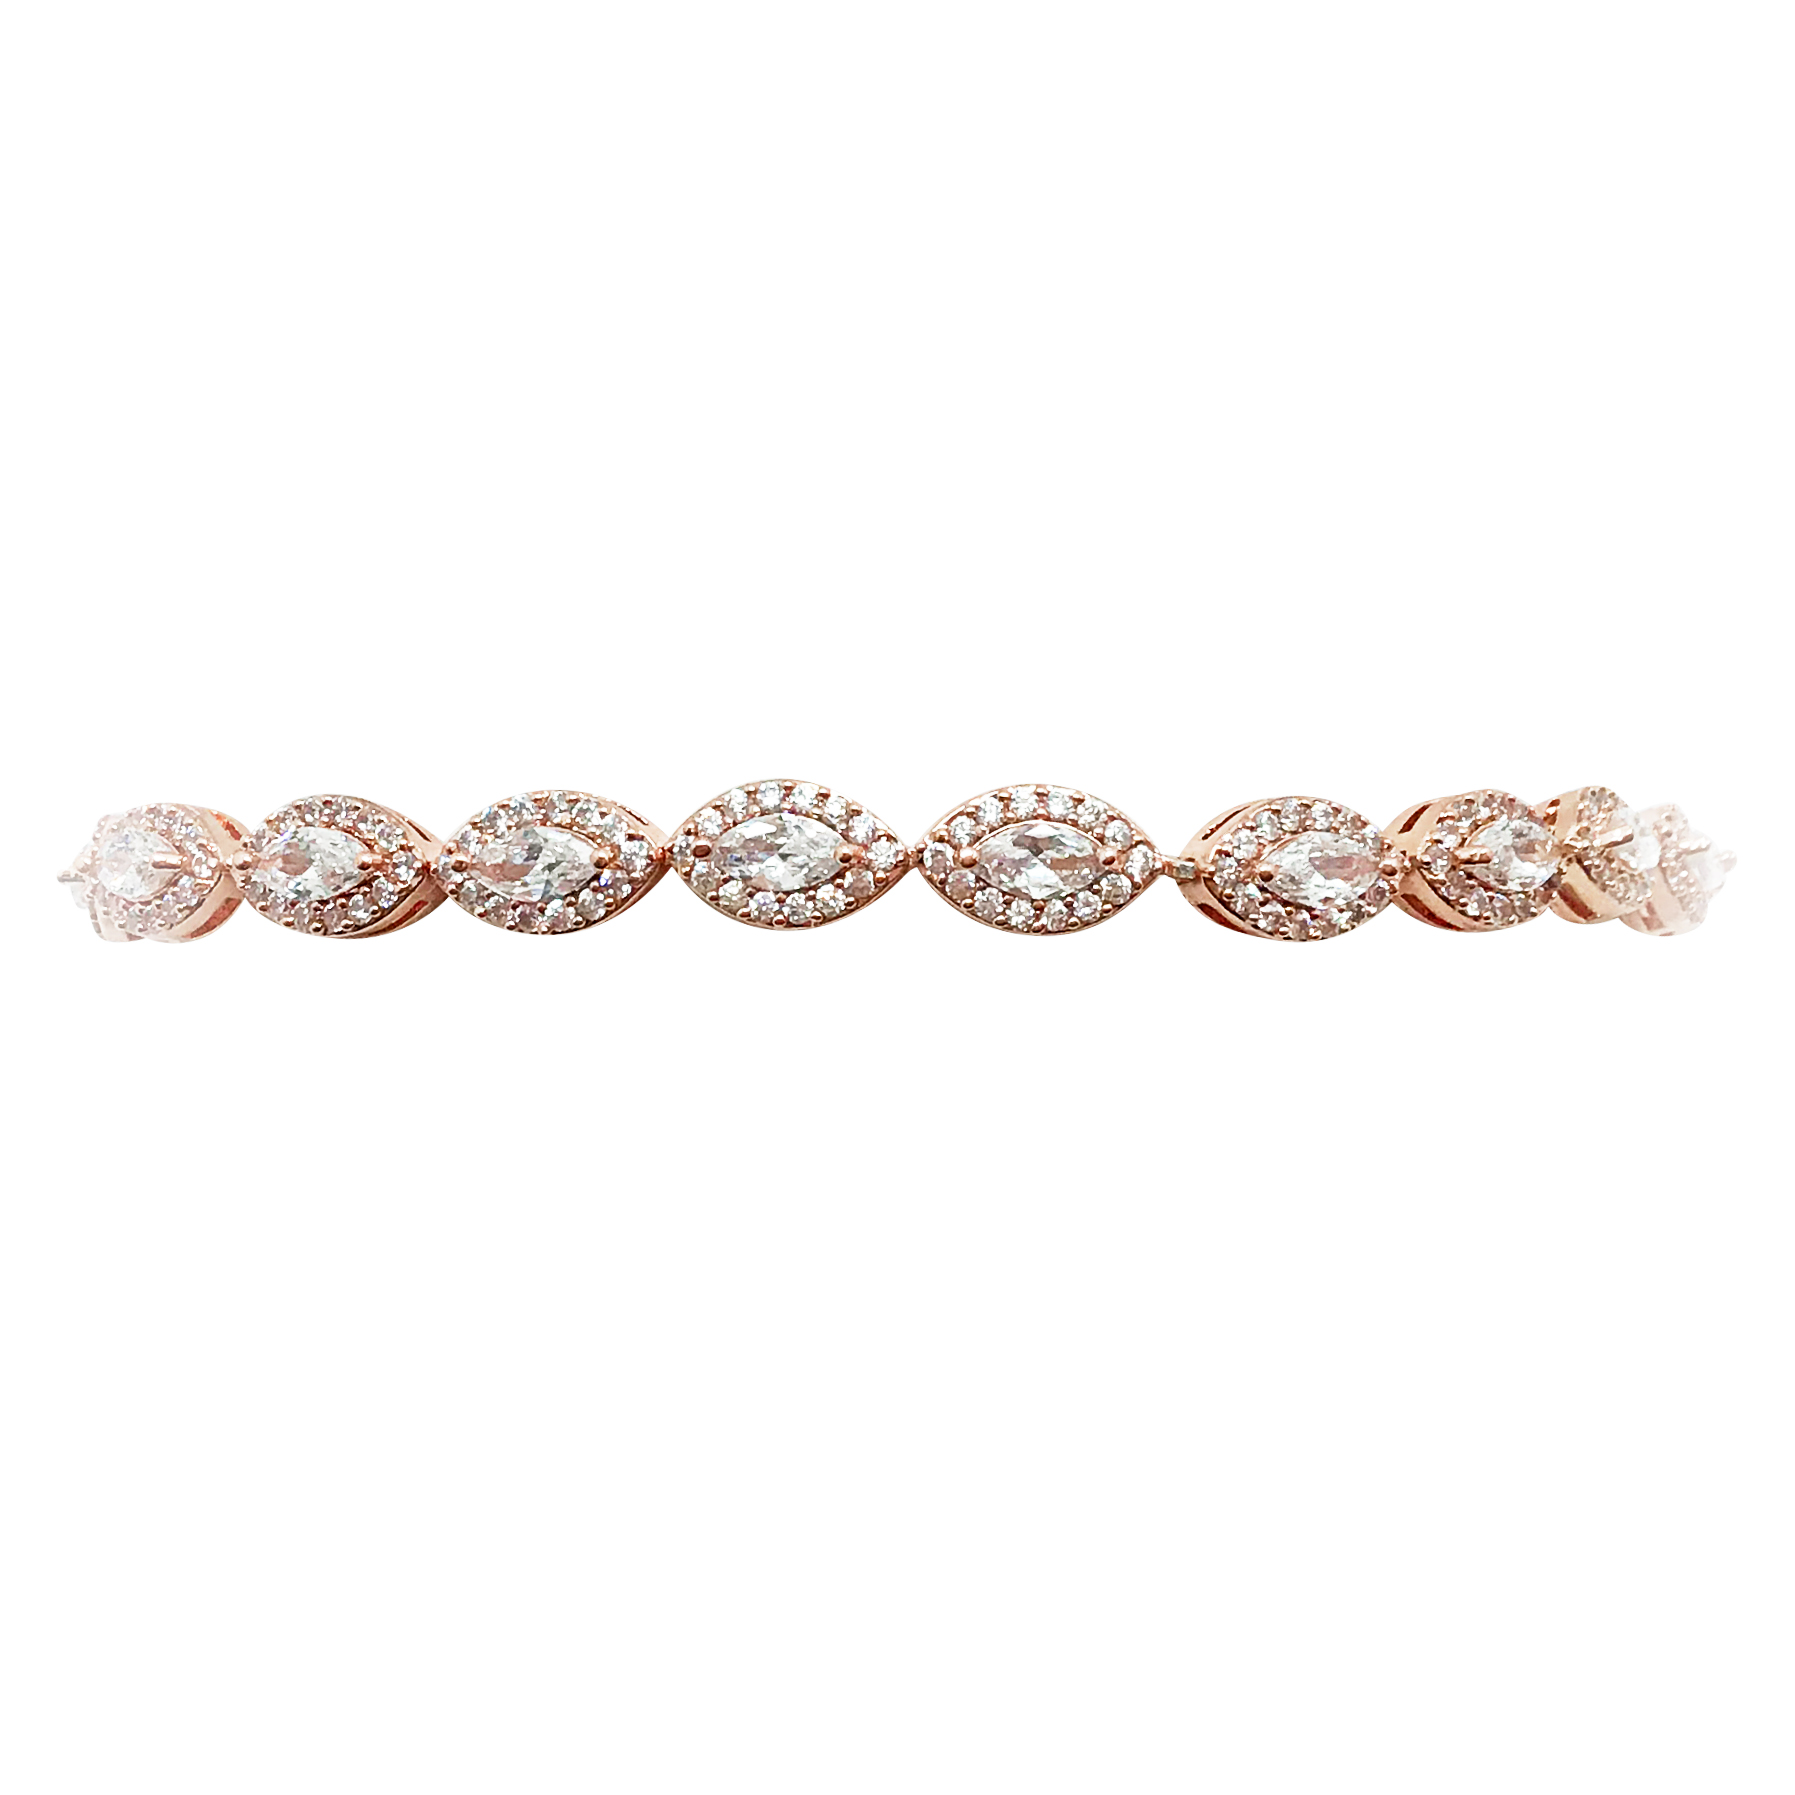 Rose Gold Wedding Bracelet|Monroe|Jeanette Maree|Shop Online